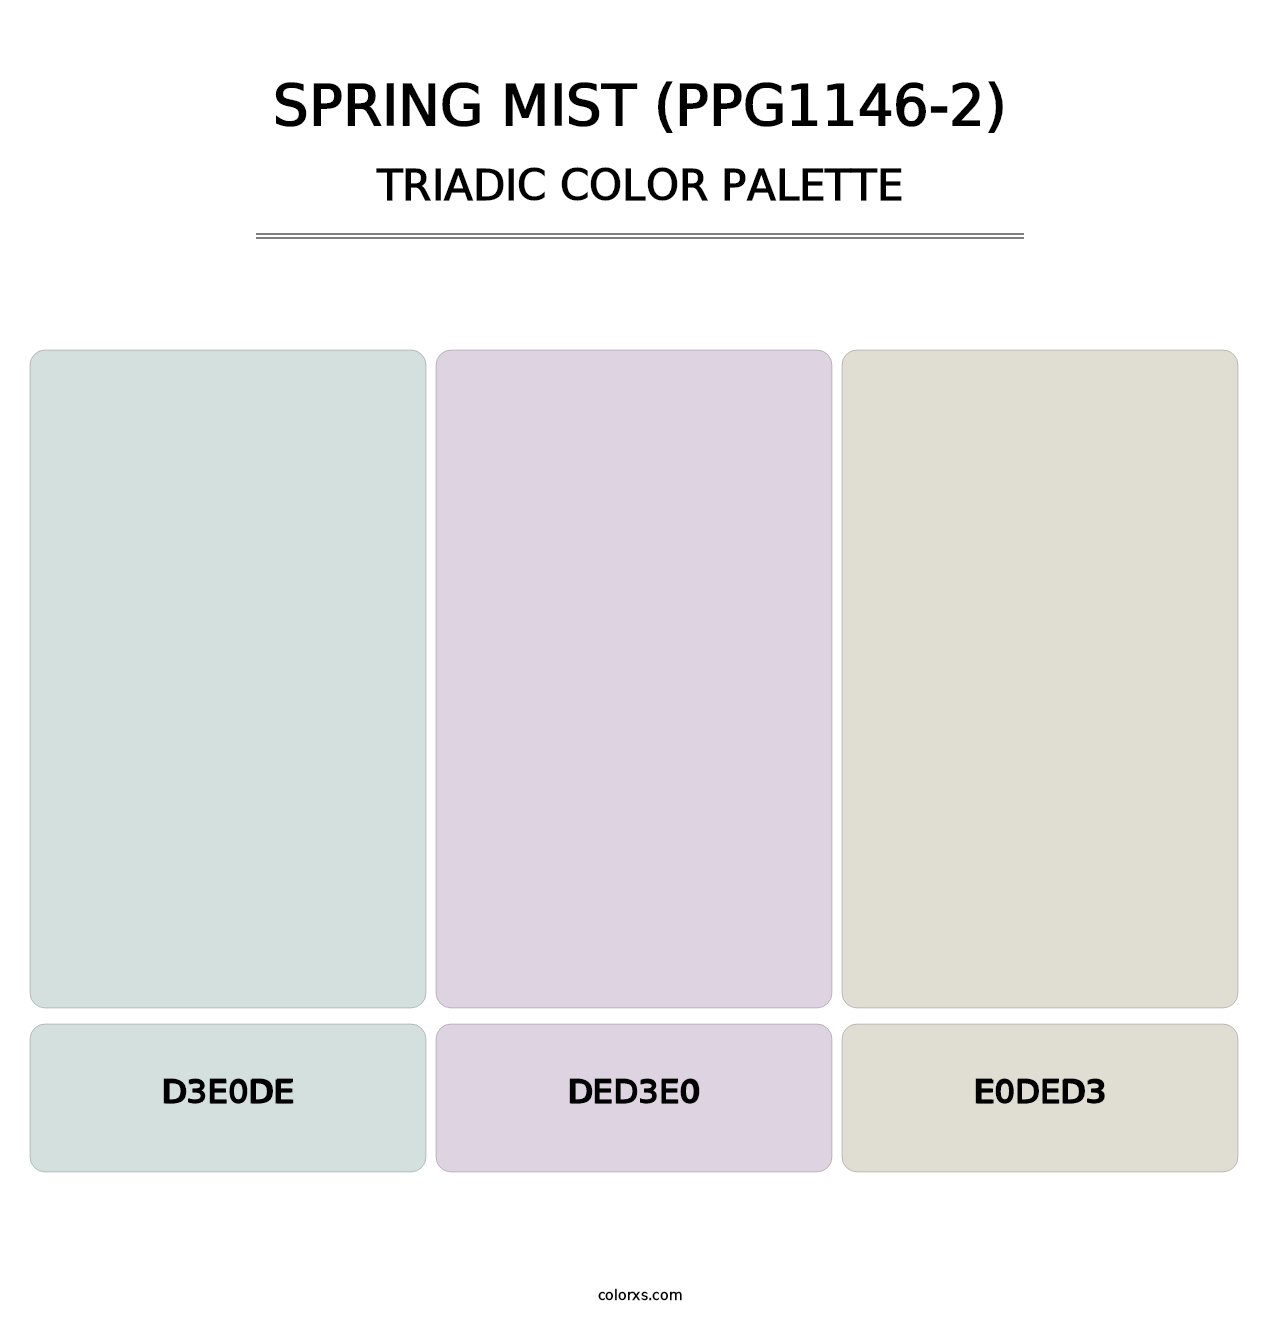 Spring Mist (PPG1146-2) - Triadic Color Palette